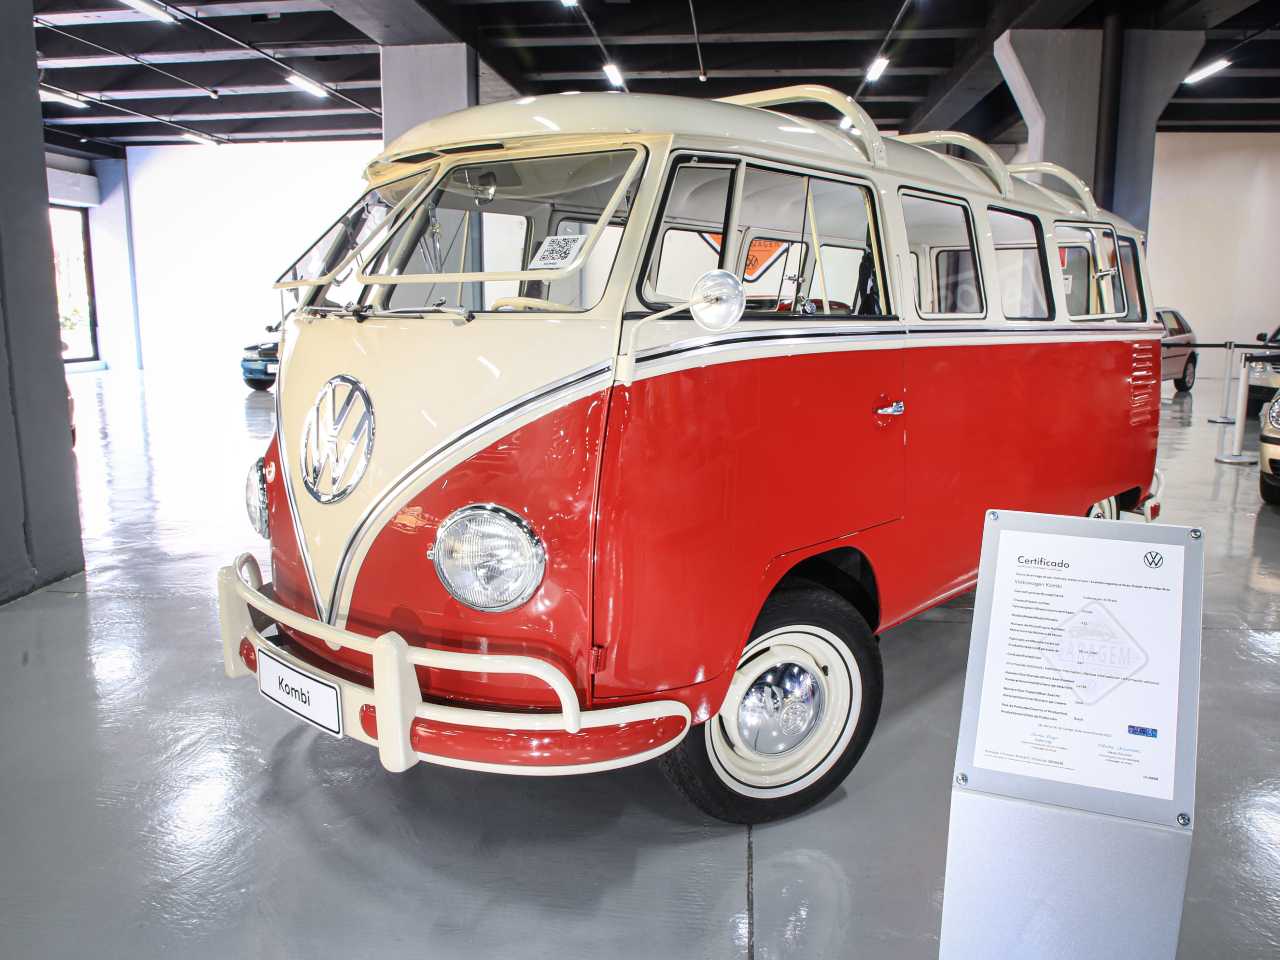 VW Kombi está na Garagem VW e foi um dos primeiros clássicos da marca a ter o Certificado da fábrica